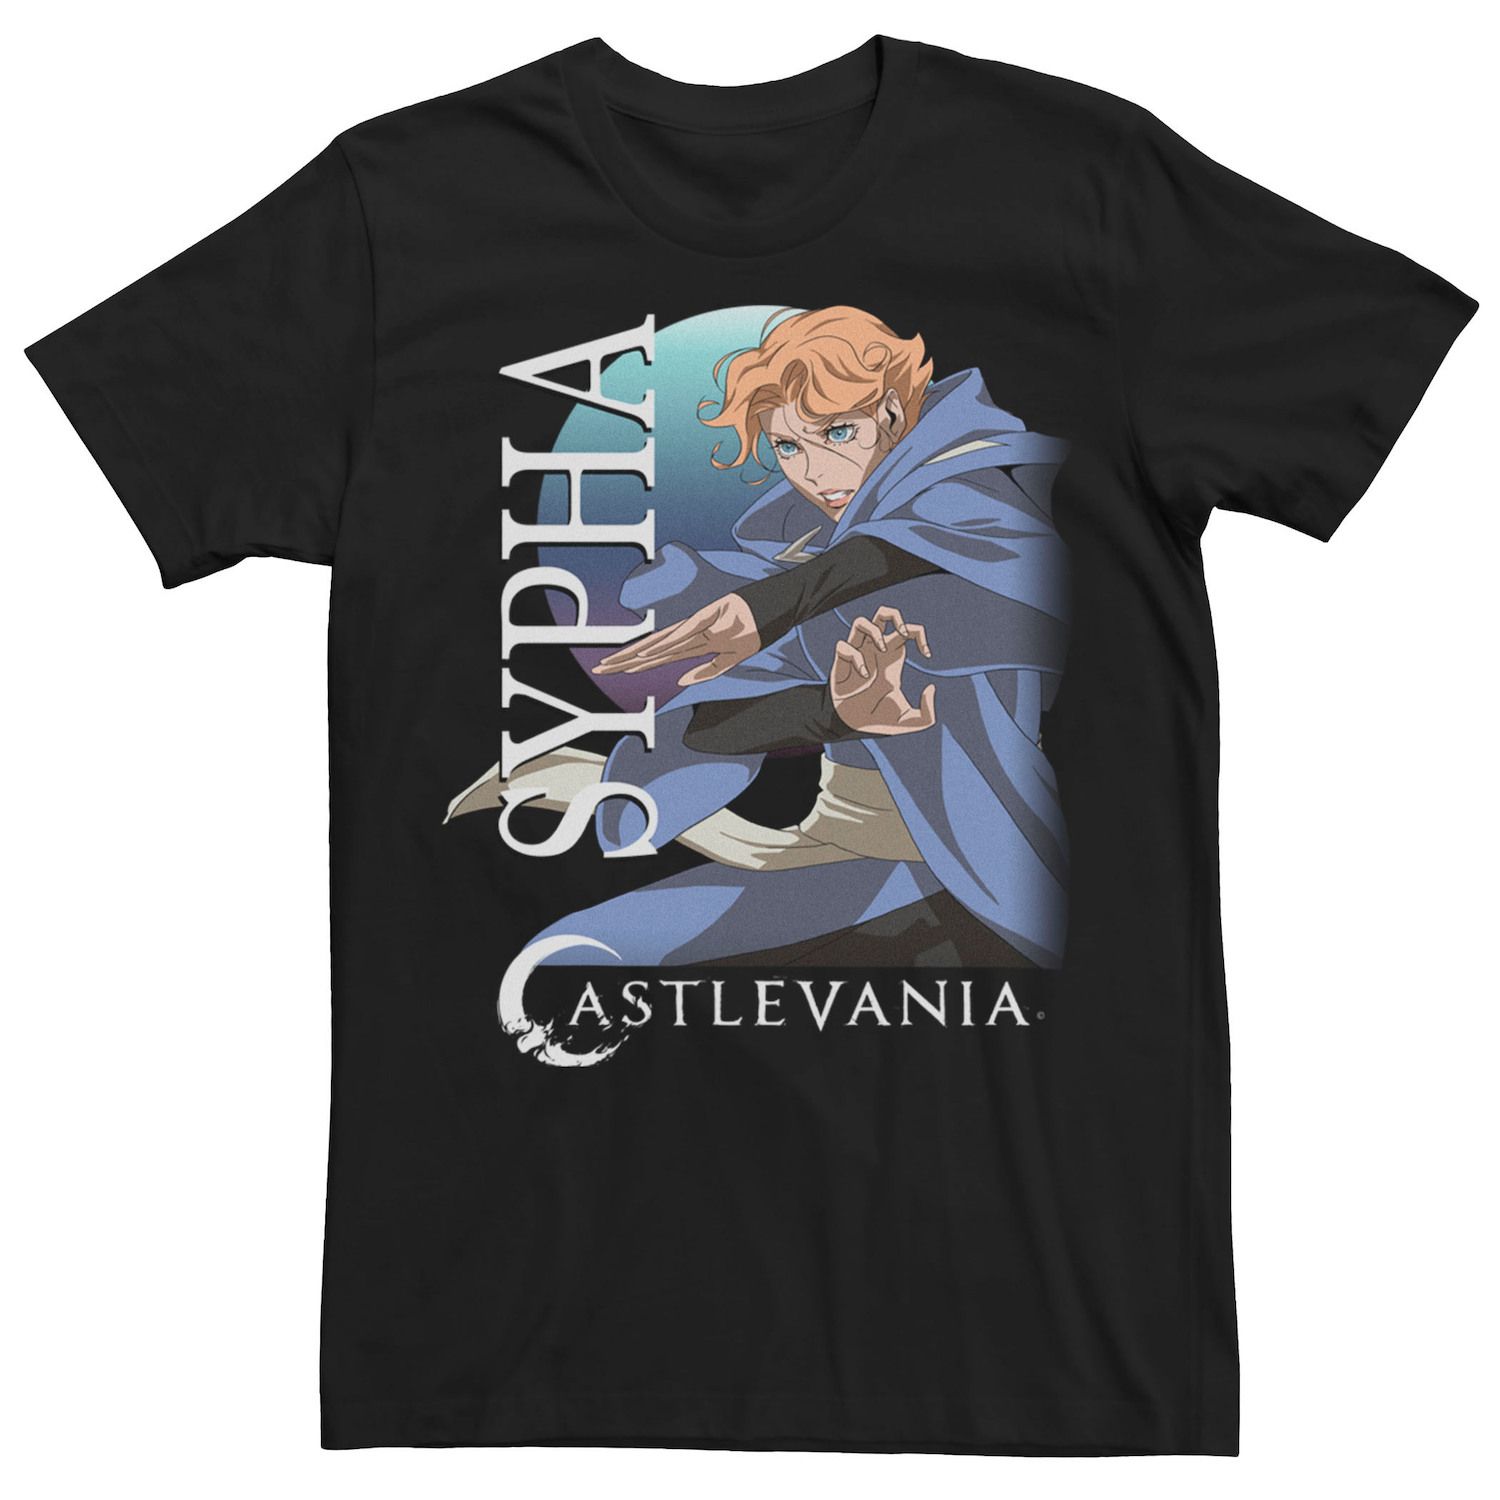 Мужская футболка с портретом Netflix Castlevania Sypha Licensed Character цена и фото